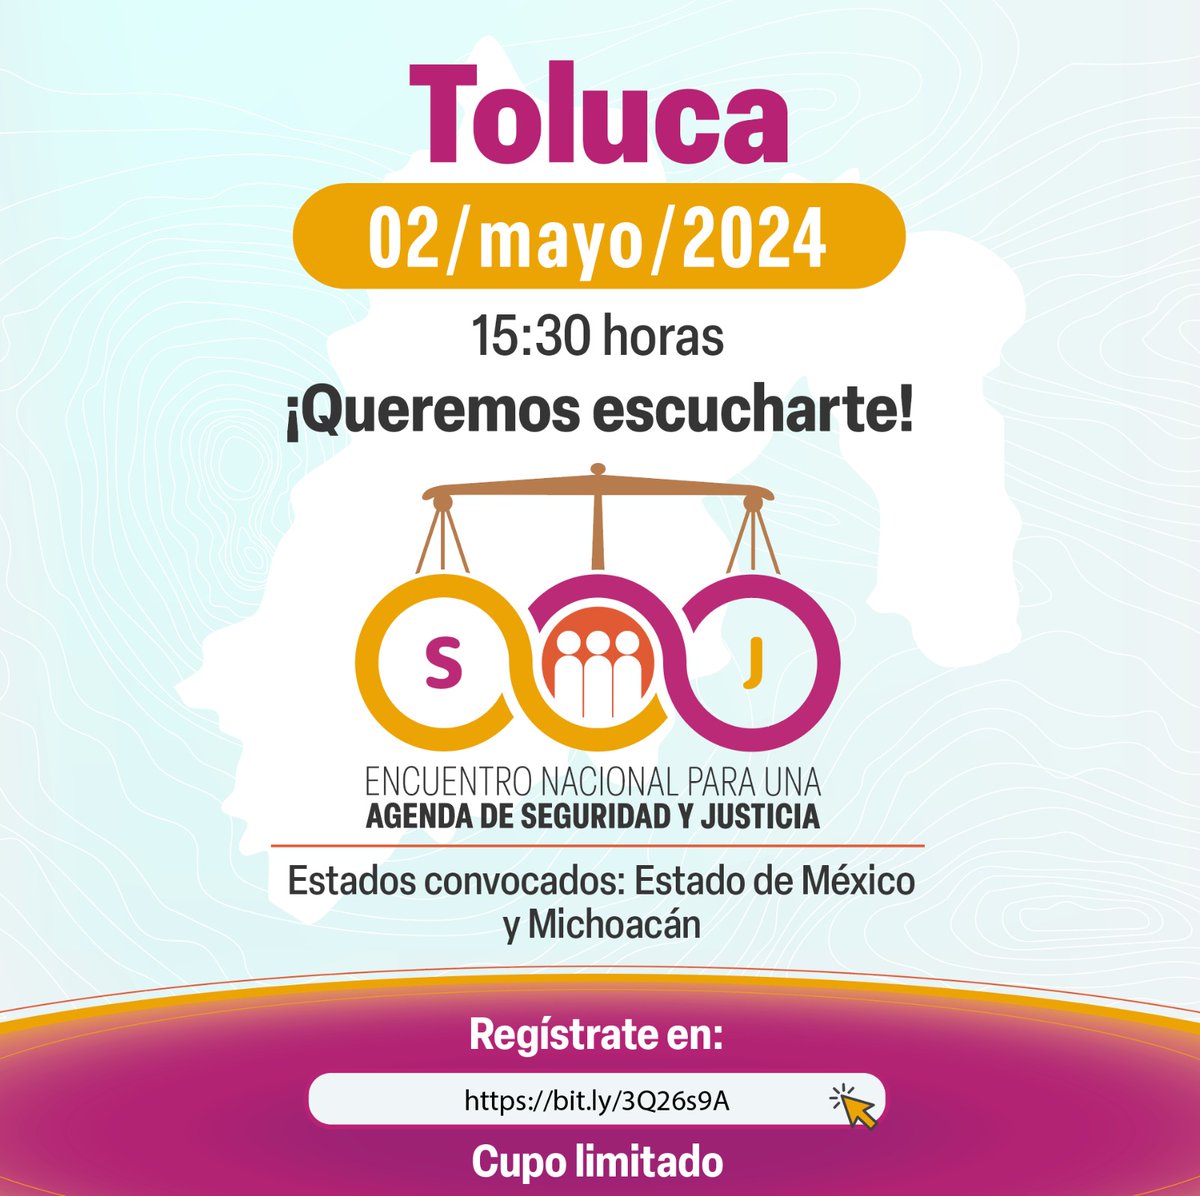 📢 Hoy 🕘 16 h

🟡🟠🔴 Sigue #EnVivo la inauguración de la 6ª sesión del #EncuentroNacionalSeguridadyJusticia que se llevará a cabo en 📍 Toluca

✅ Estados convocados  #Edomex #Michoacán

🔴 Conéctate aquí bit.ly/4biX1ei

#PJF_Escucha